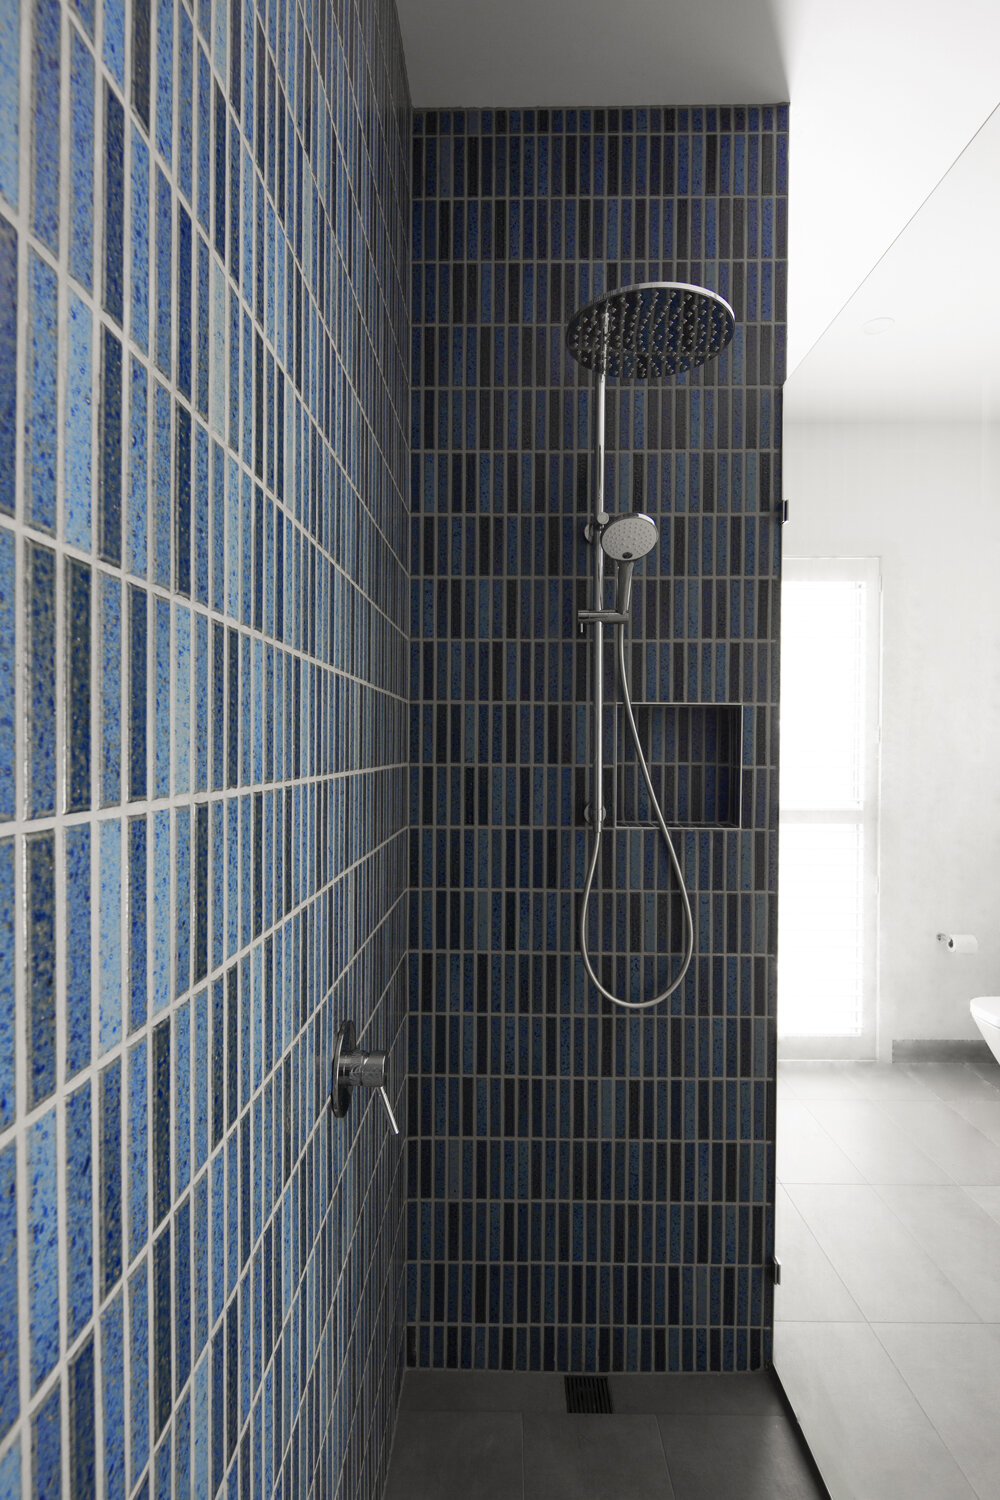 Blue Japanese finger tiled bathroom designed by interior designer Meredith Lee